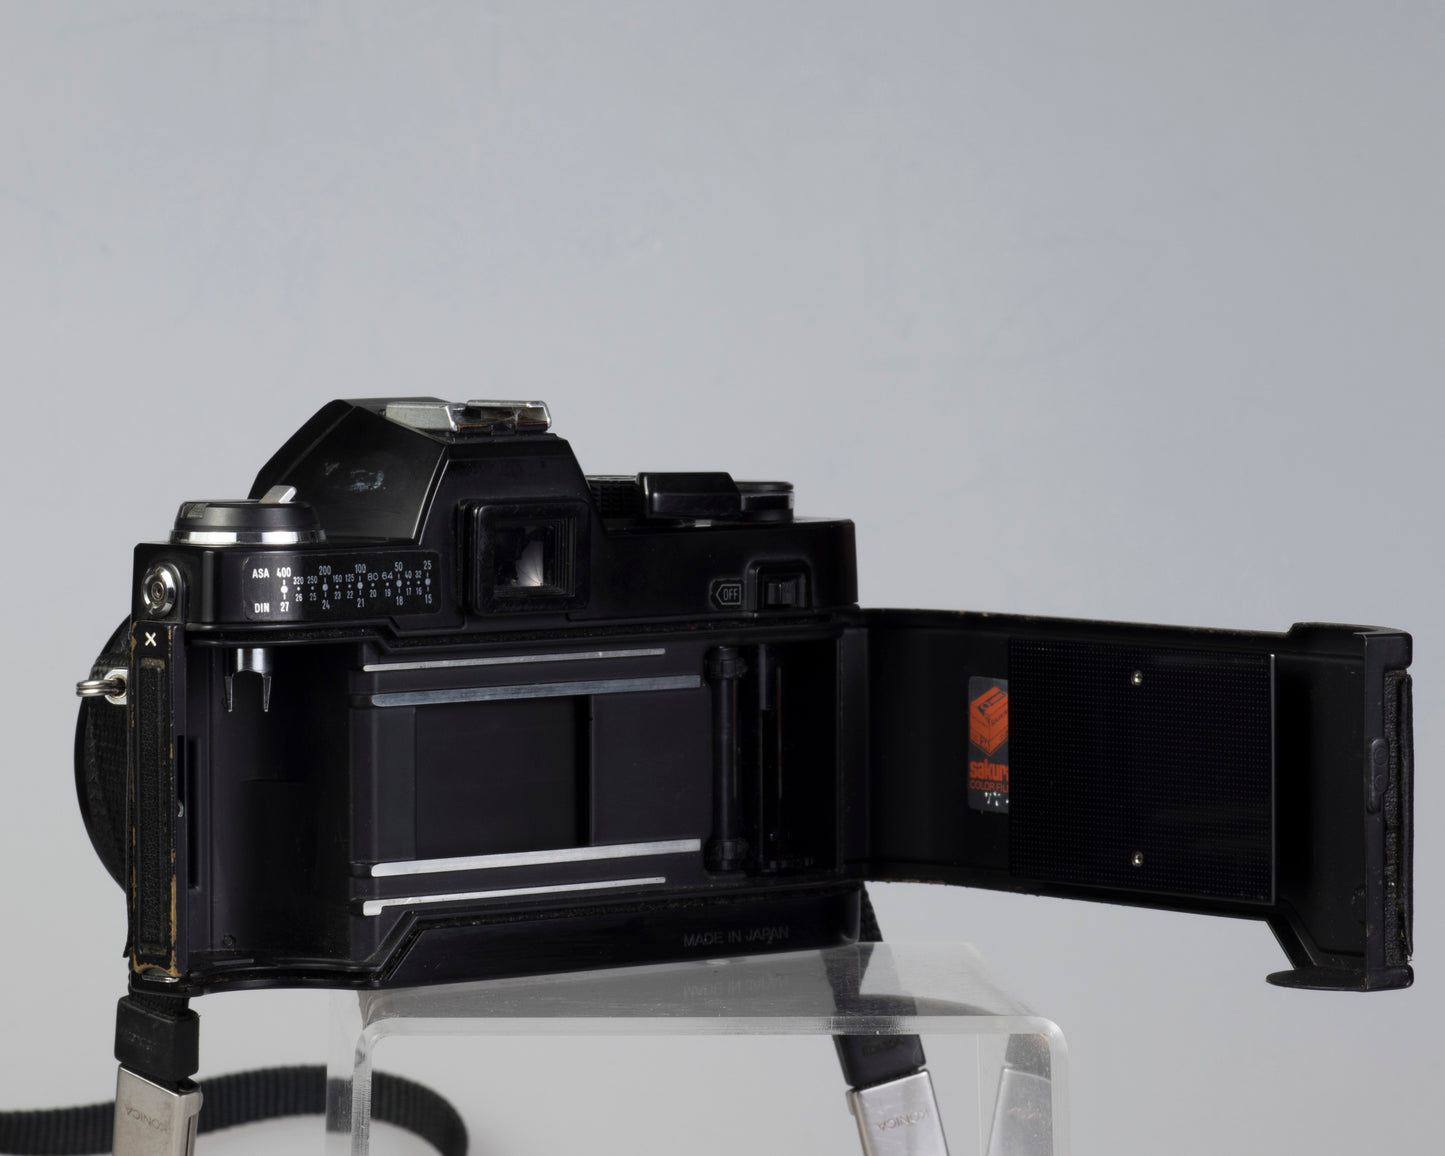 Reflex Konica Autoreflex TC 35 mm avec objectif Hexanon AR 50 mm f1.8 * sans déclencheur de flash ; sinon fonctionne bien *